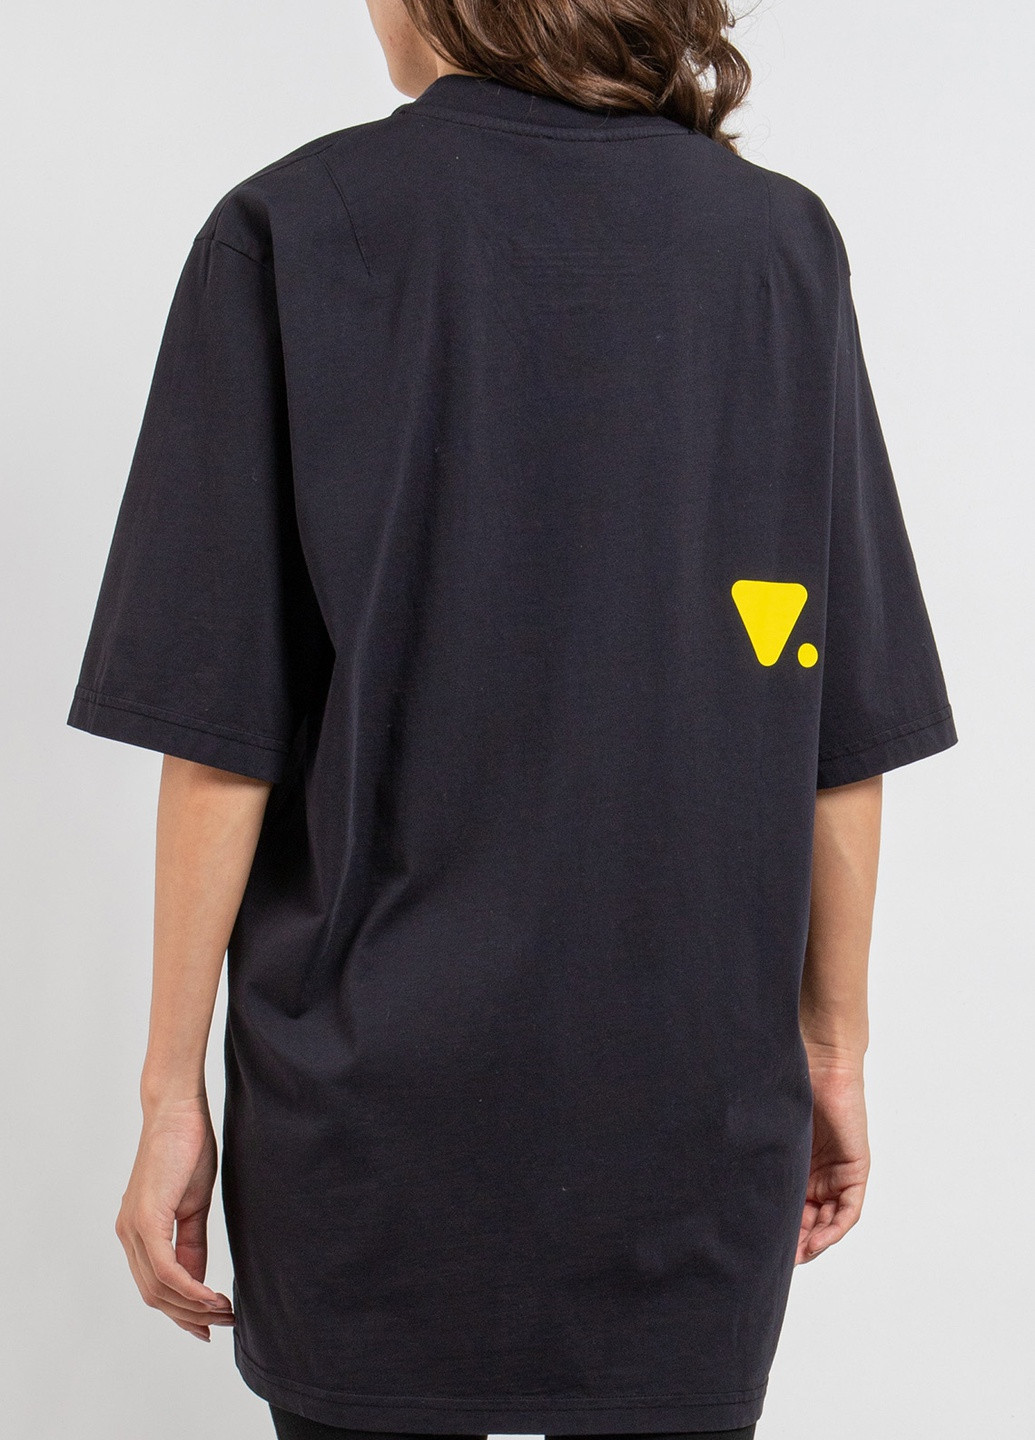 Черная футболка с логотипом цвета морской волны Valvola